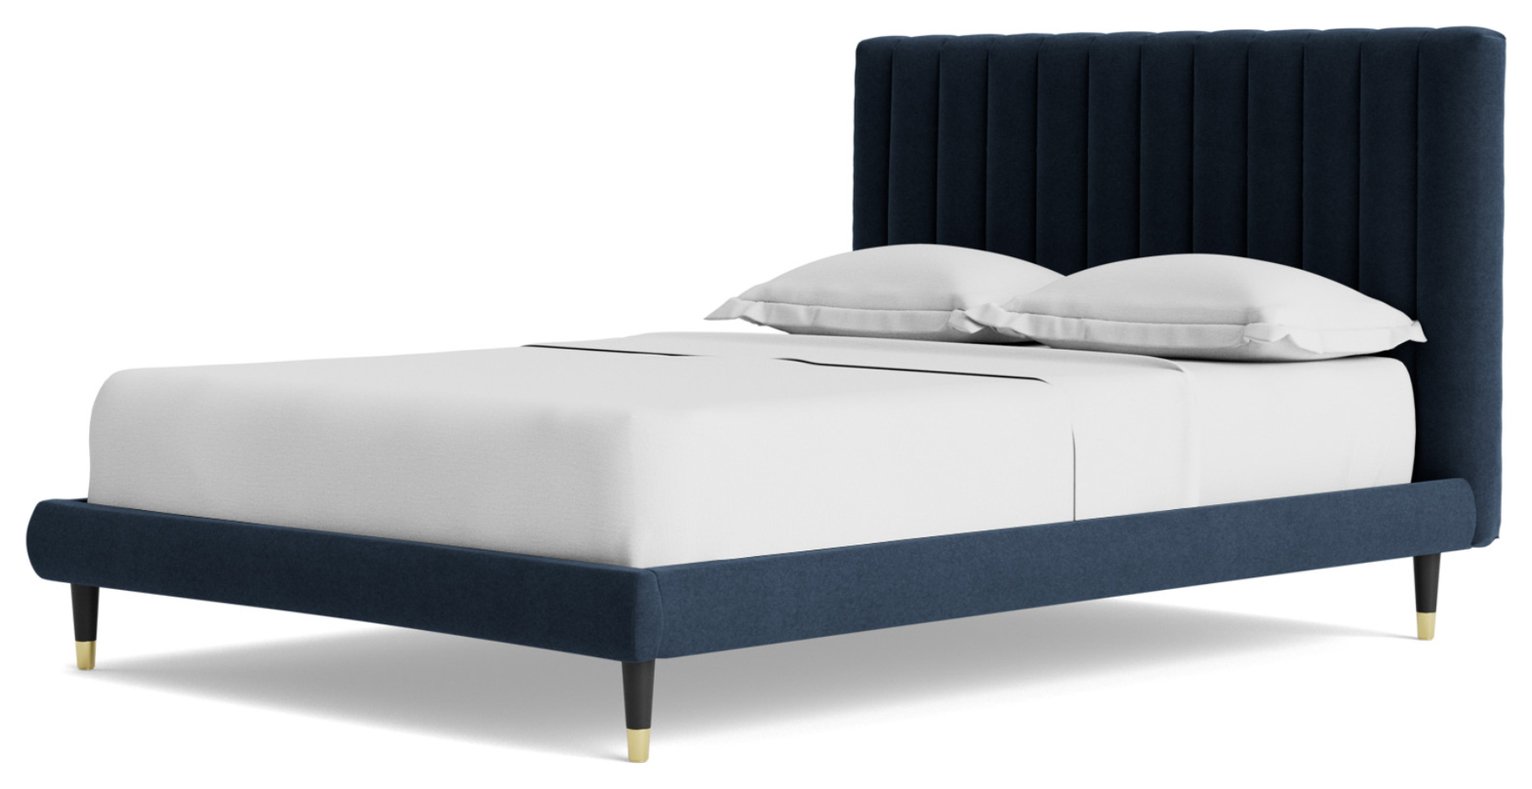 Swoon Porlock Kingsize Fabric Bed Frame - Indigo Blue